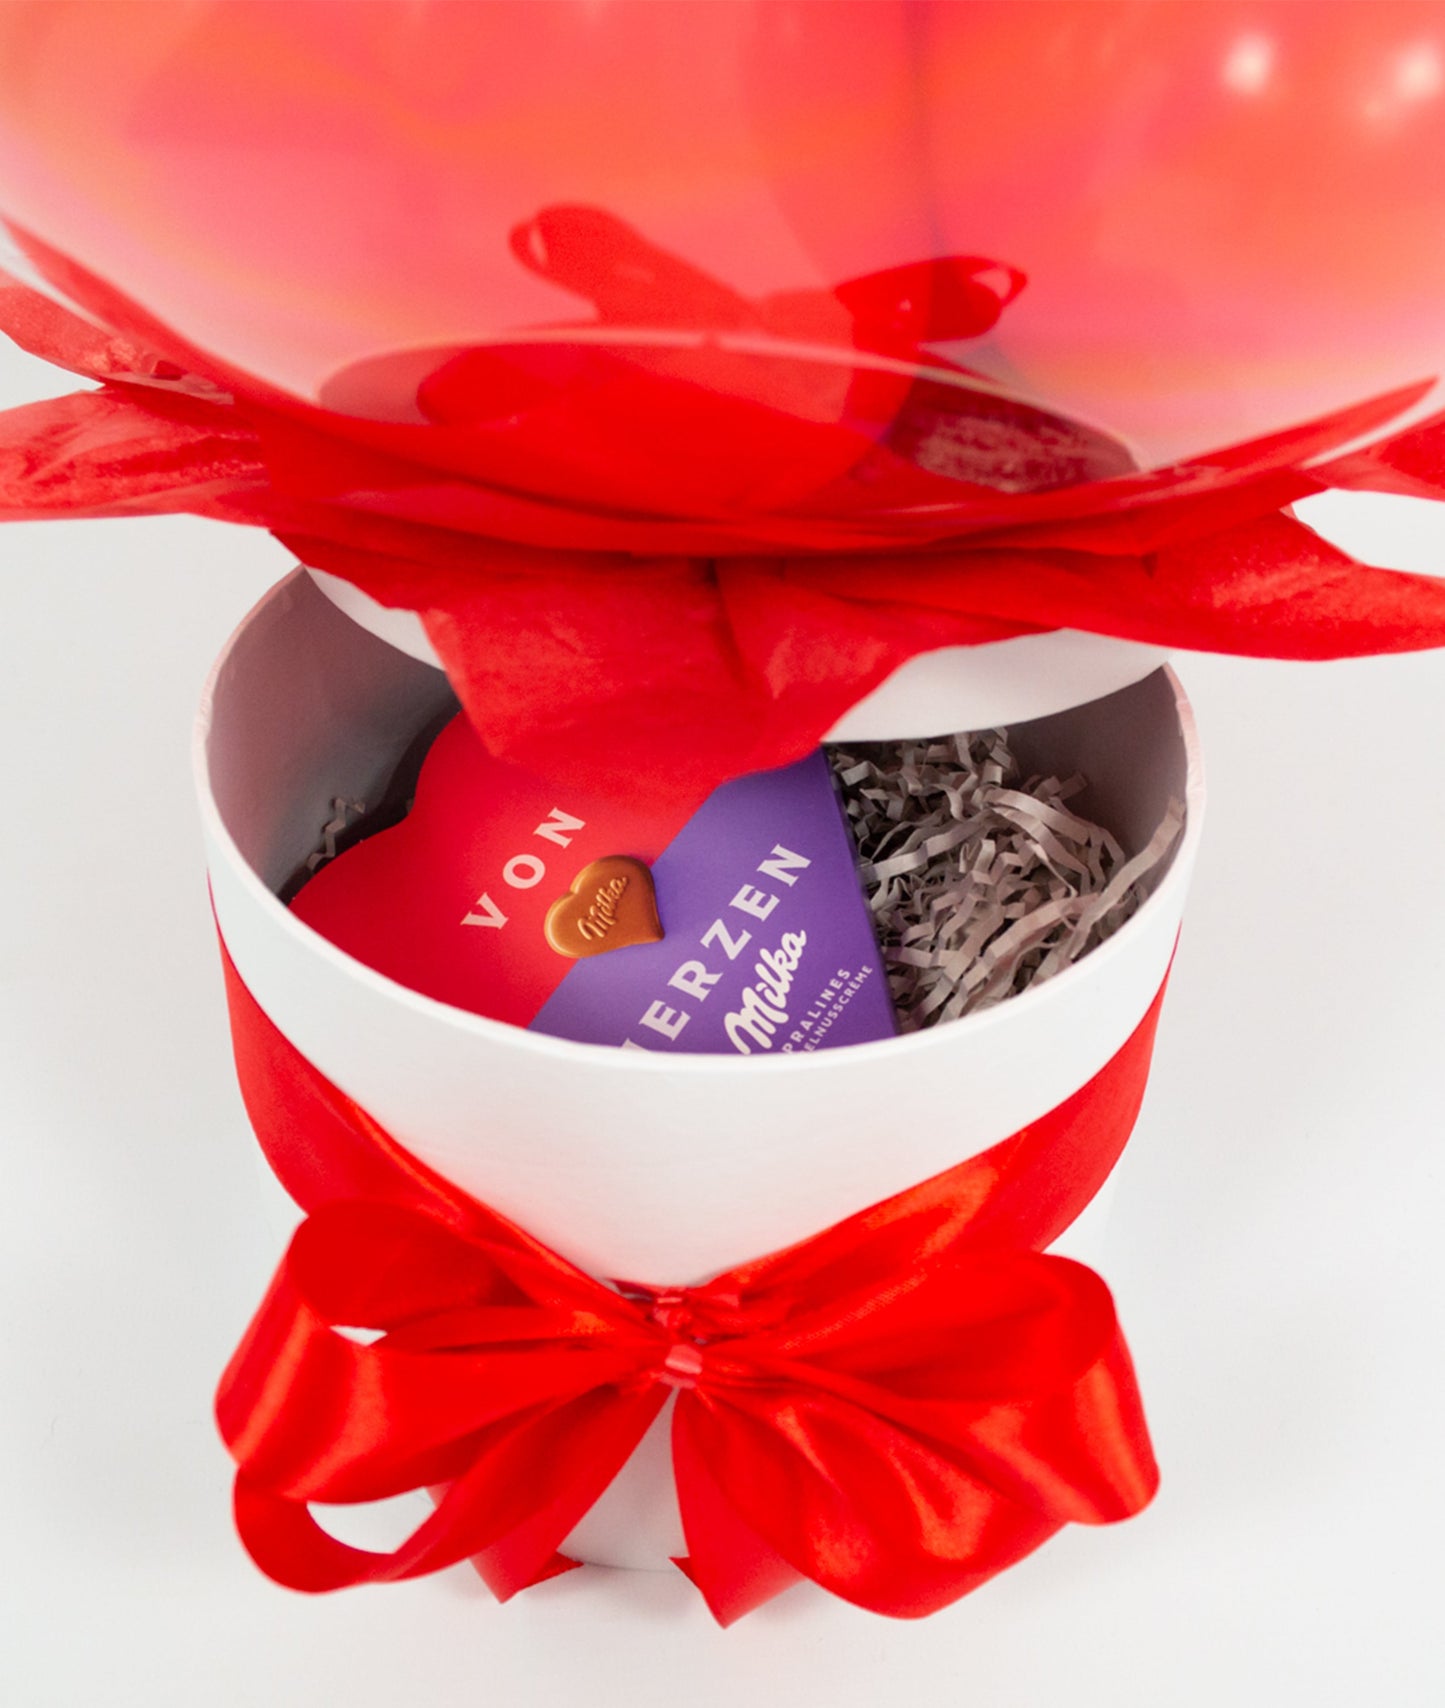 Happy Valentine's Day Geschenkbox Infinity Ballon